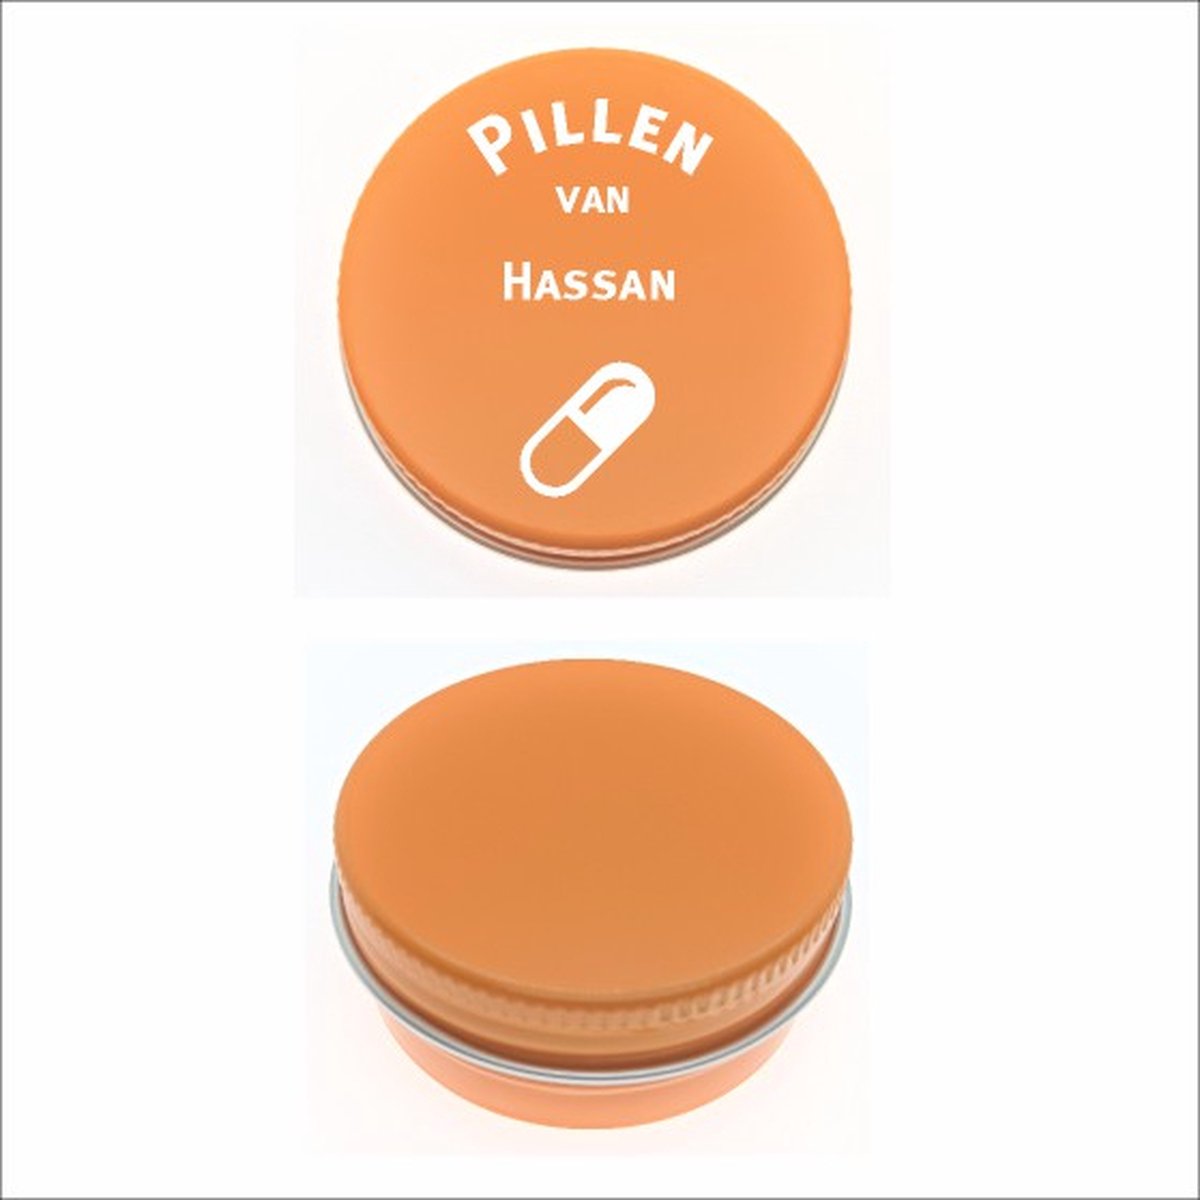 Pillen Blikje Met Naam Gravering - Hassan